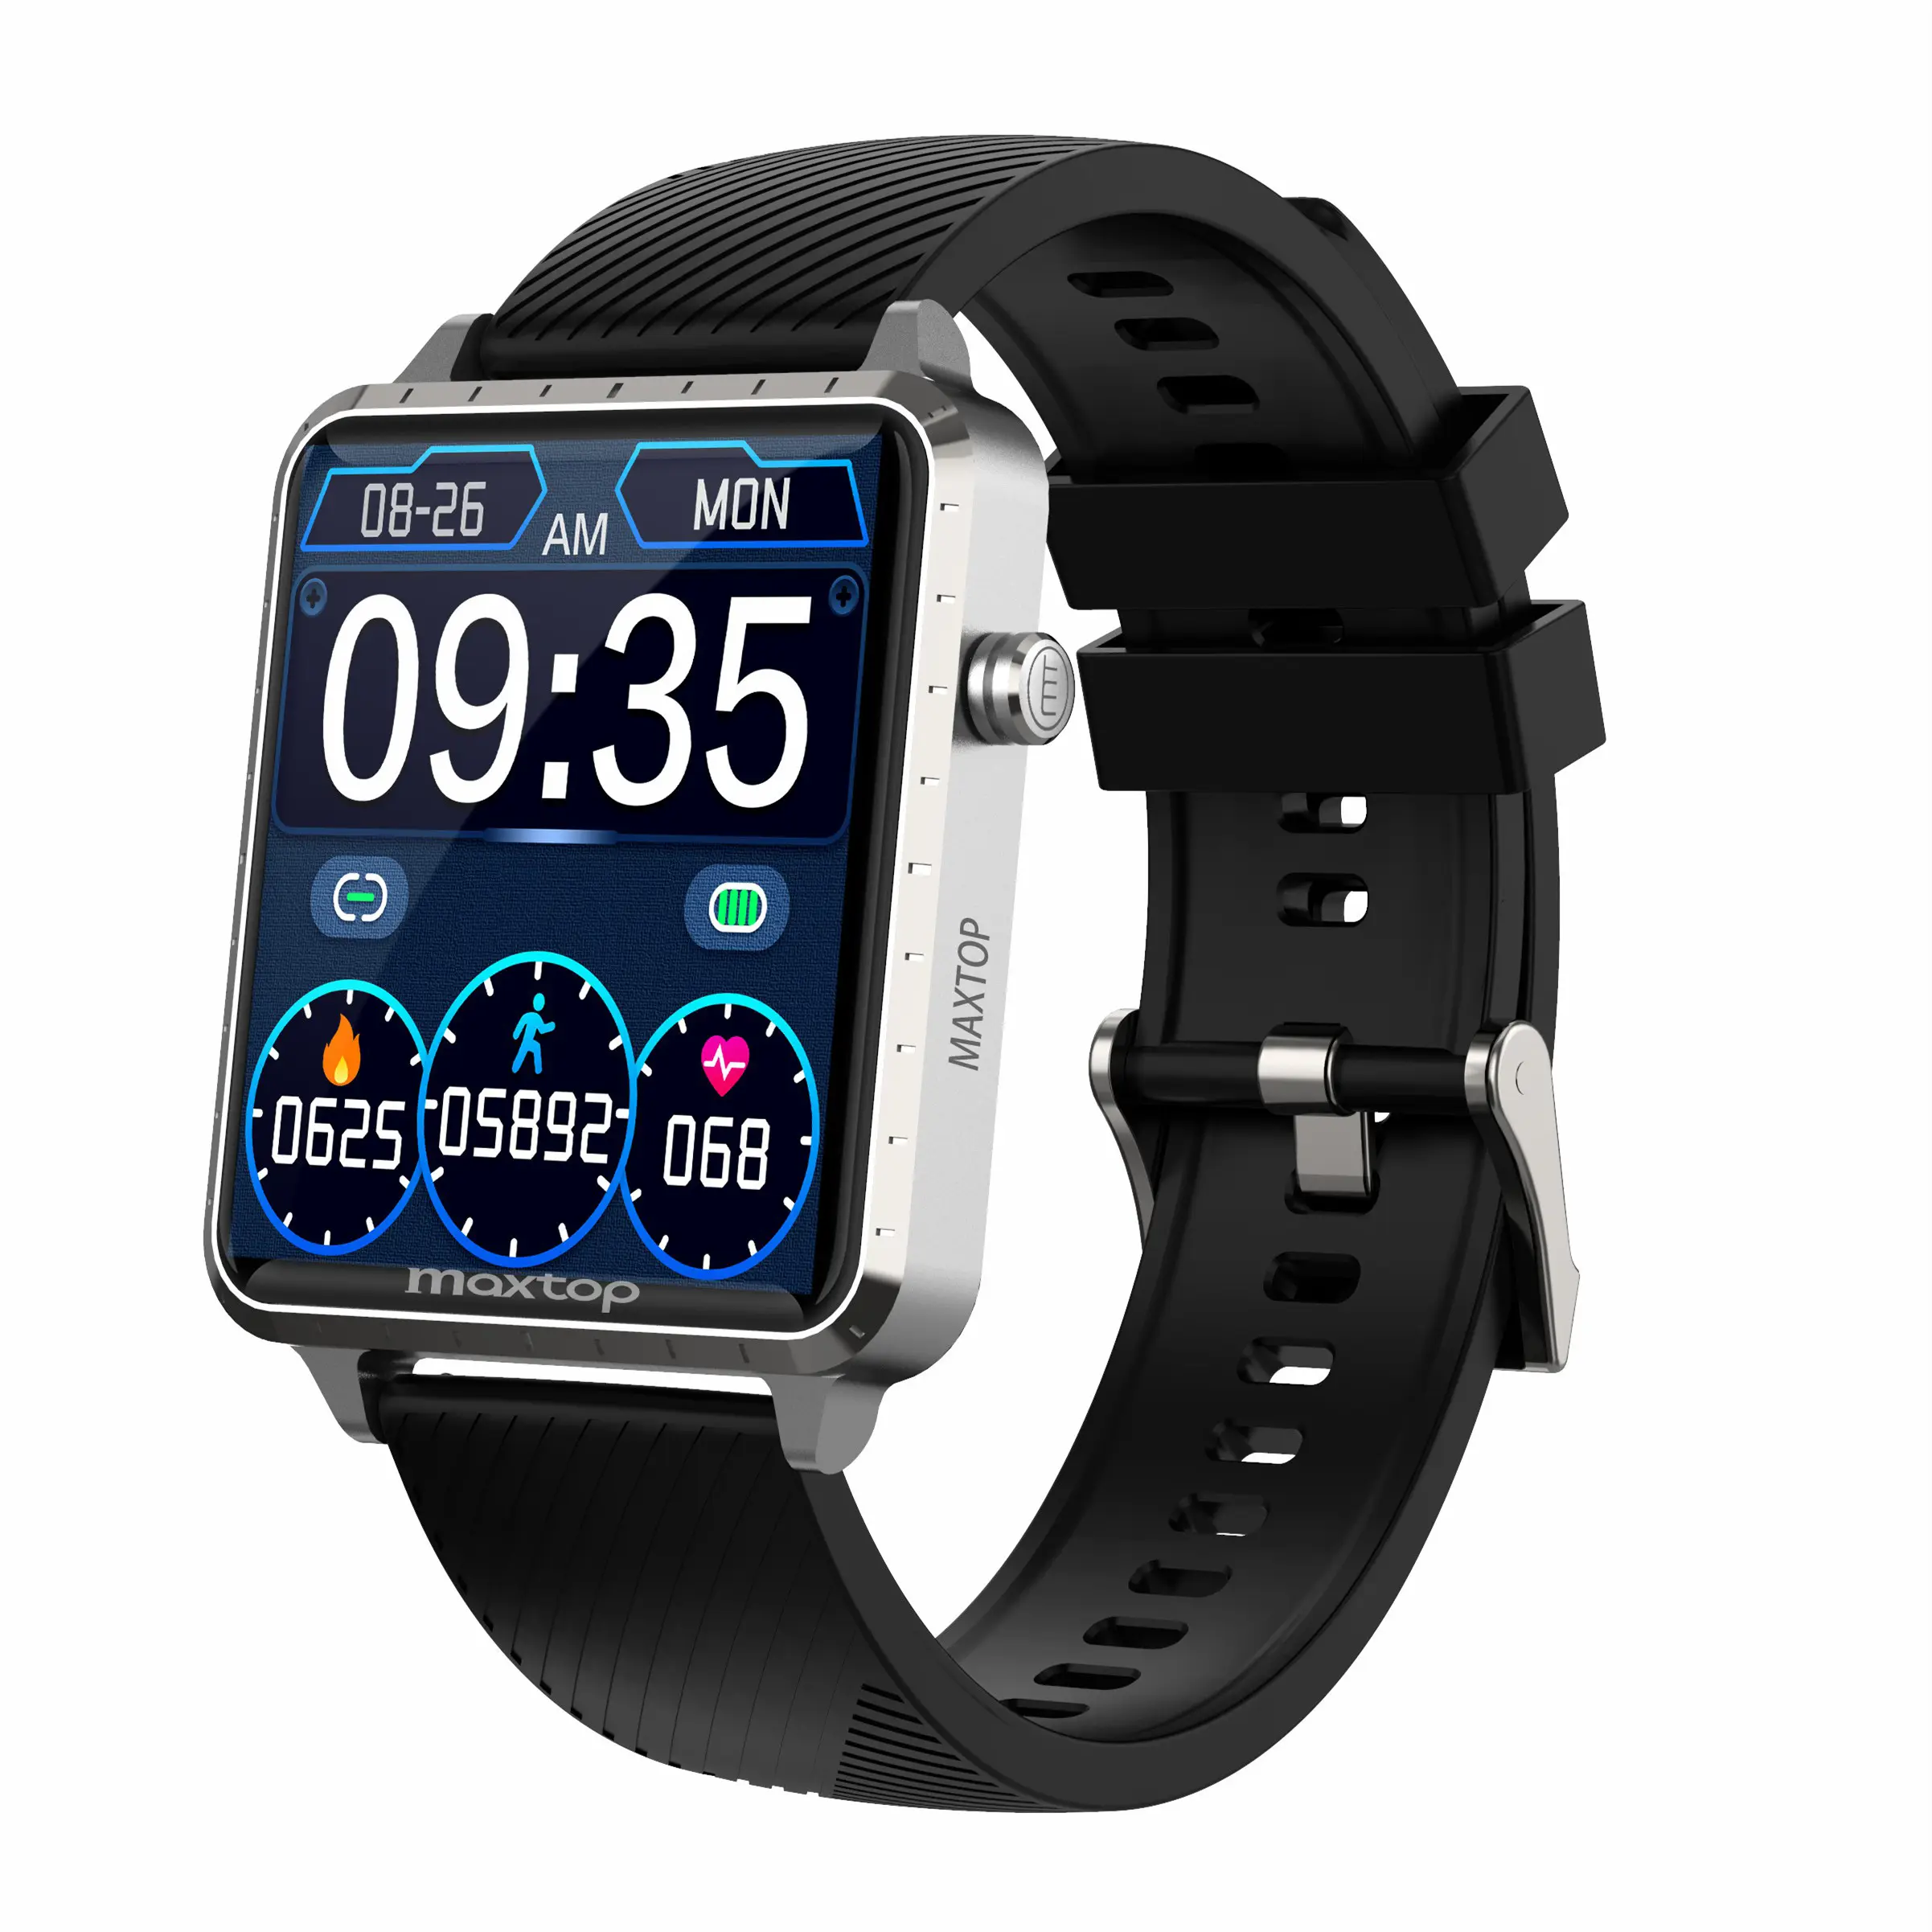 Maxtop Amazon vendita calda Smart Watch T5 Full Touch Screen cronometro meteo Monitor della pressione sanguigna Smart Watch per IOS Android